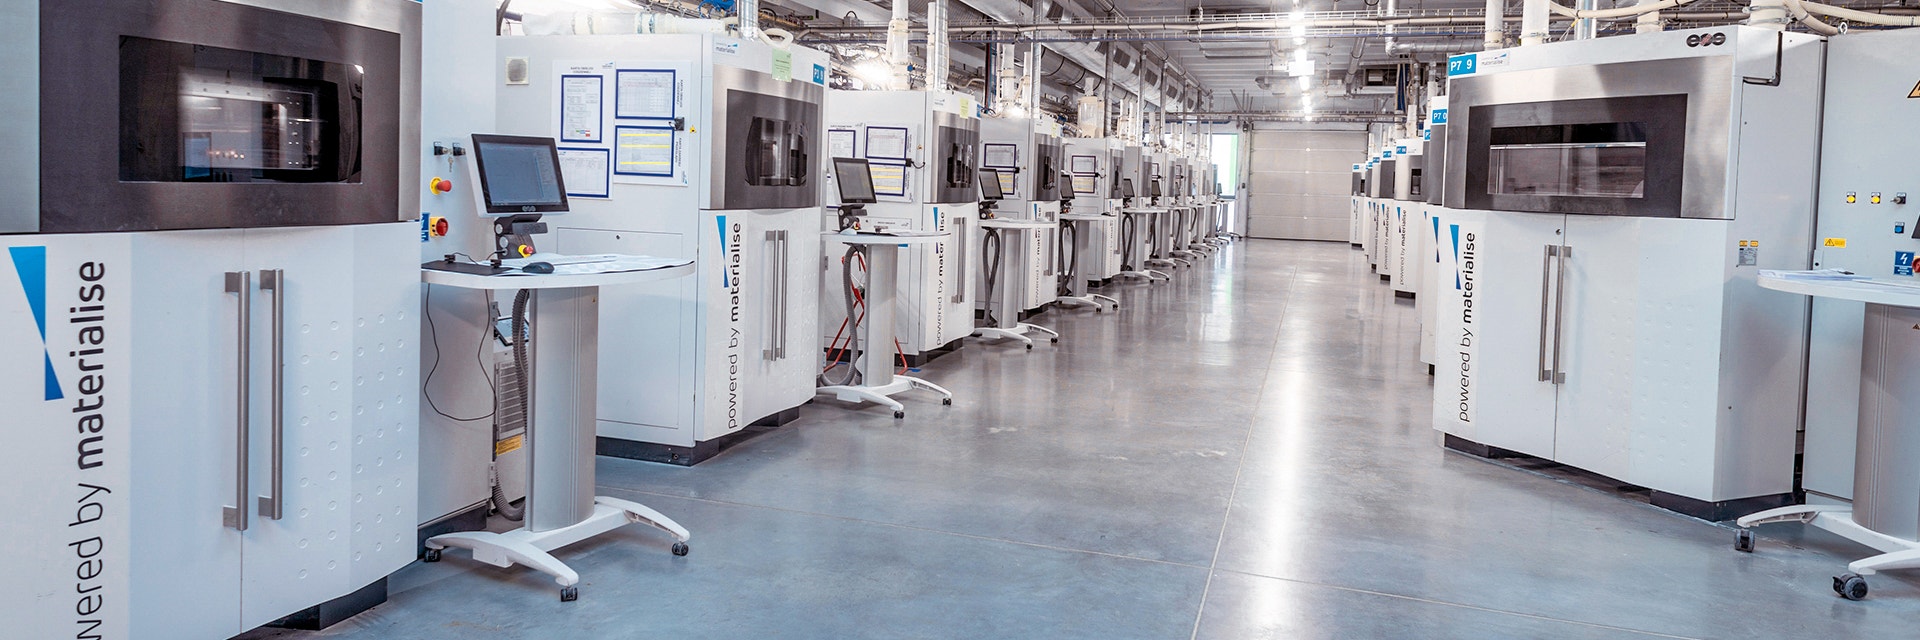 Reihe von EOS Lasersintern 3D-Druckern in einer Materialise-Produktionsanlage